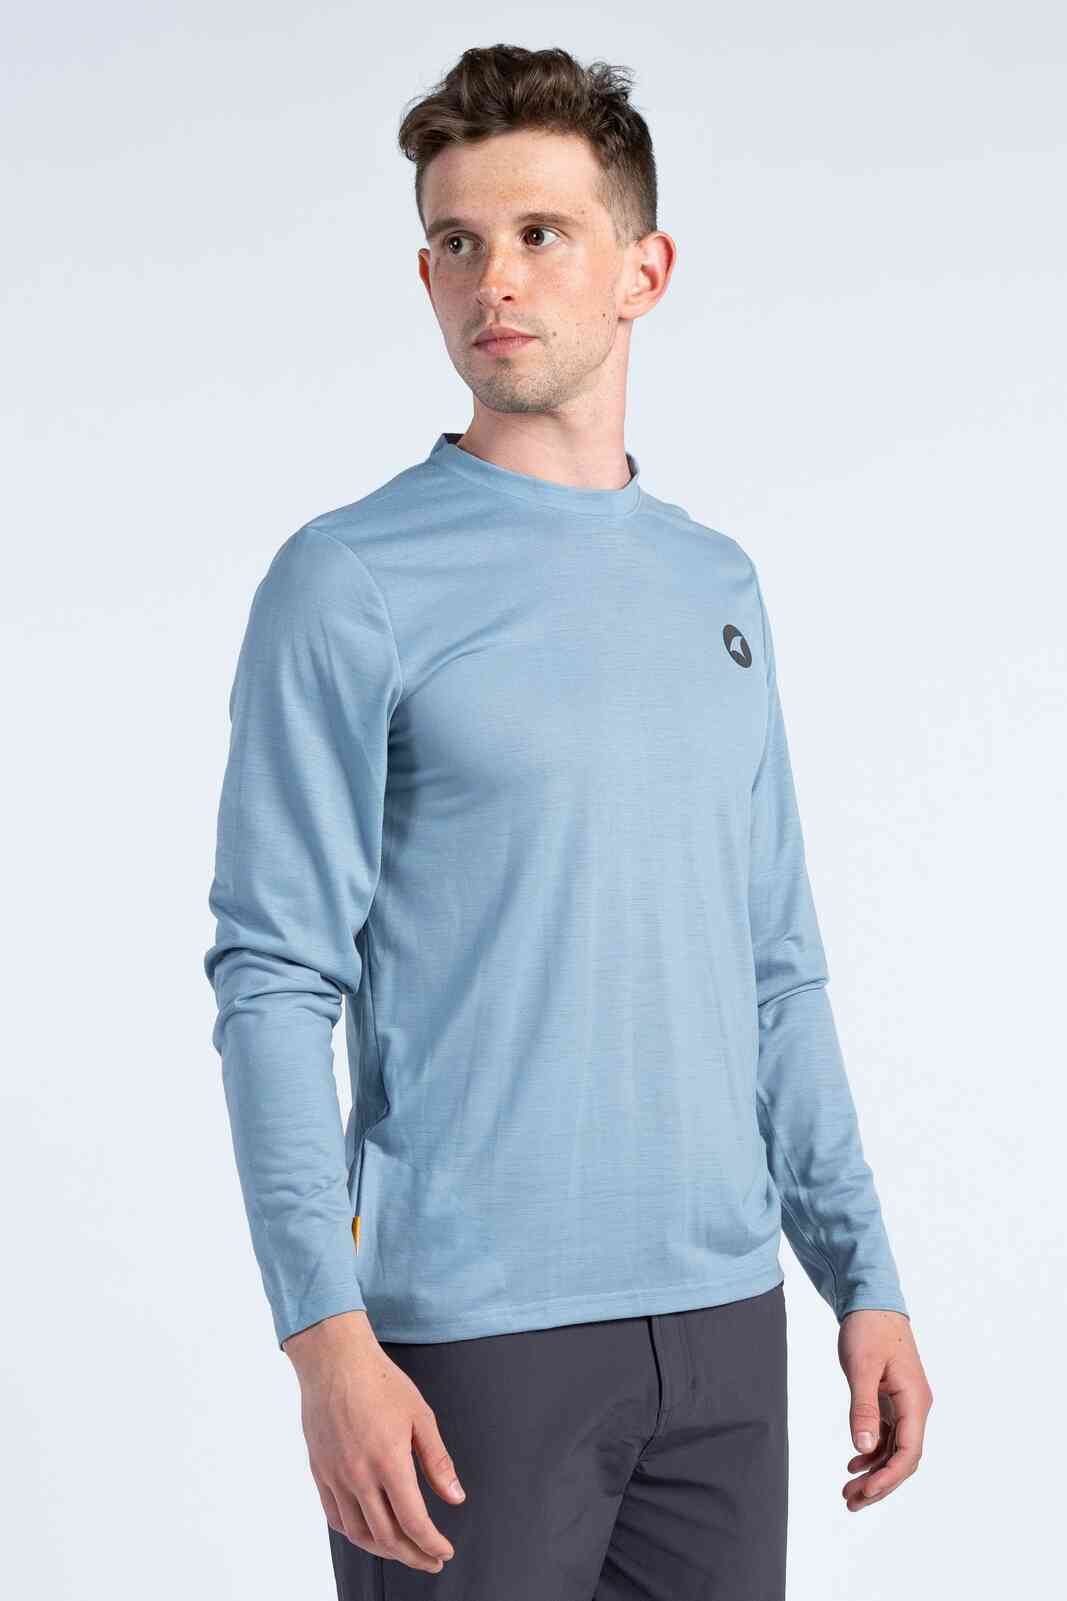 Men's Light Blue Long Sleeve MTB Shirt - Front View